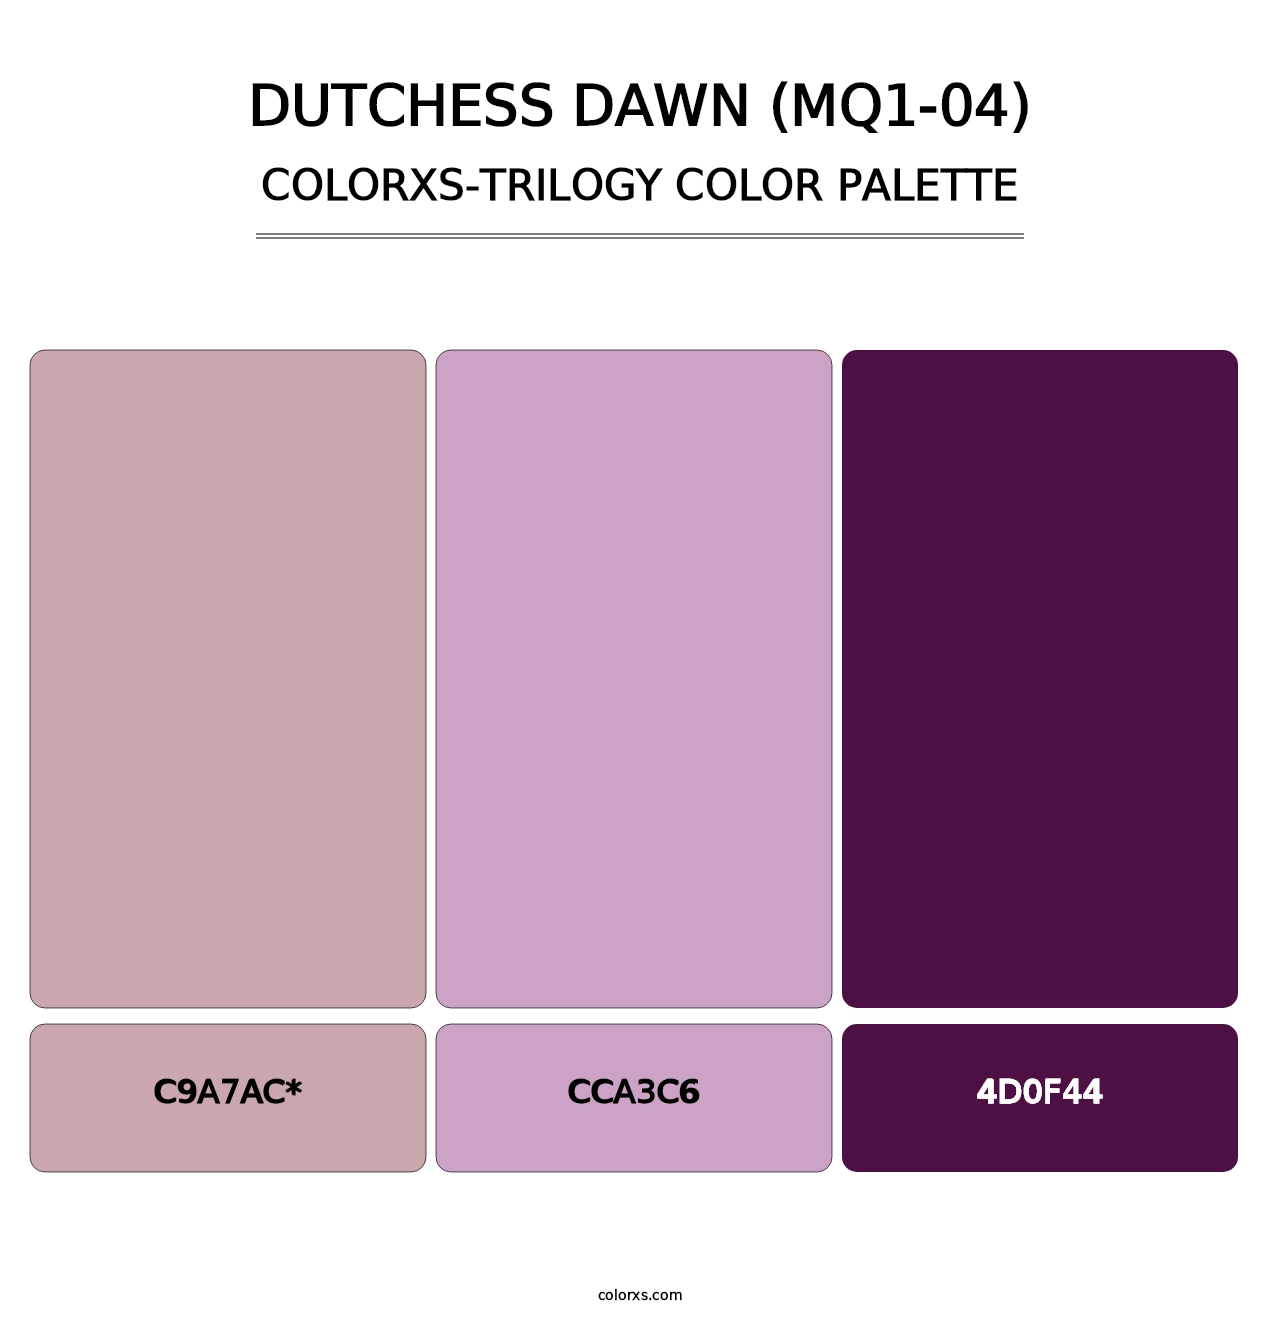 Dutchess Dawn (MQ1-04) - Colorxs Trilogy Palette